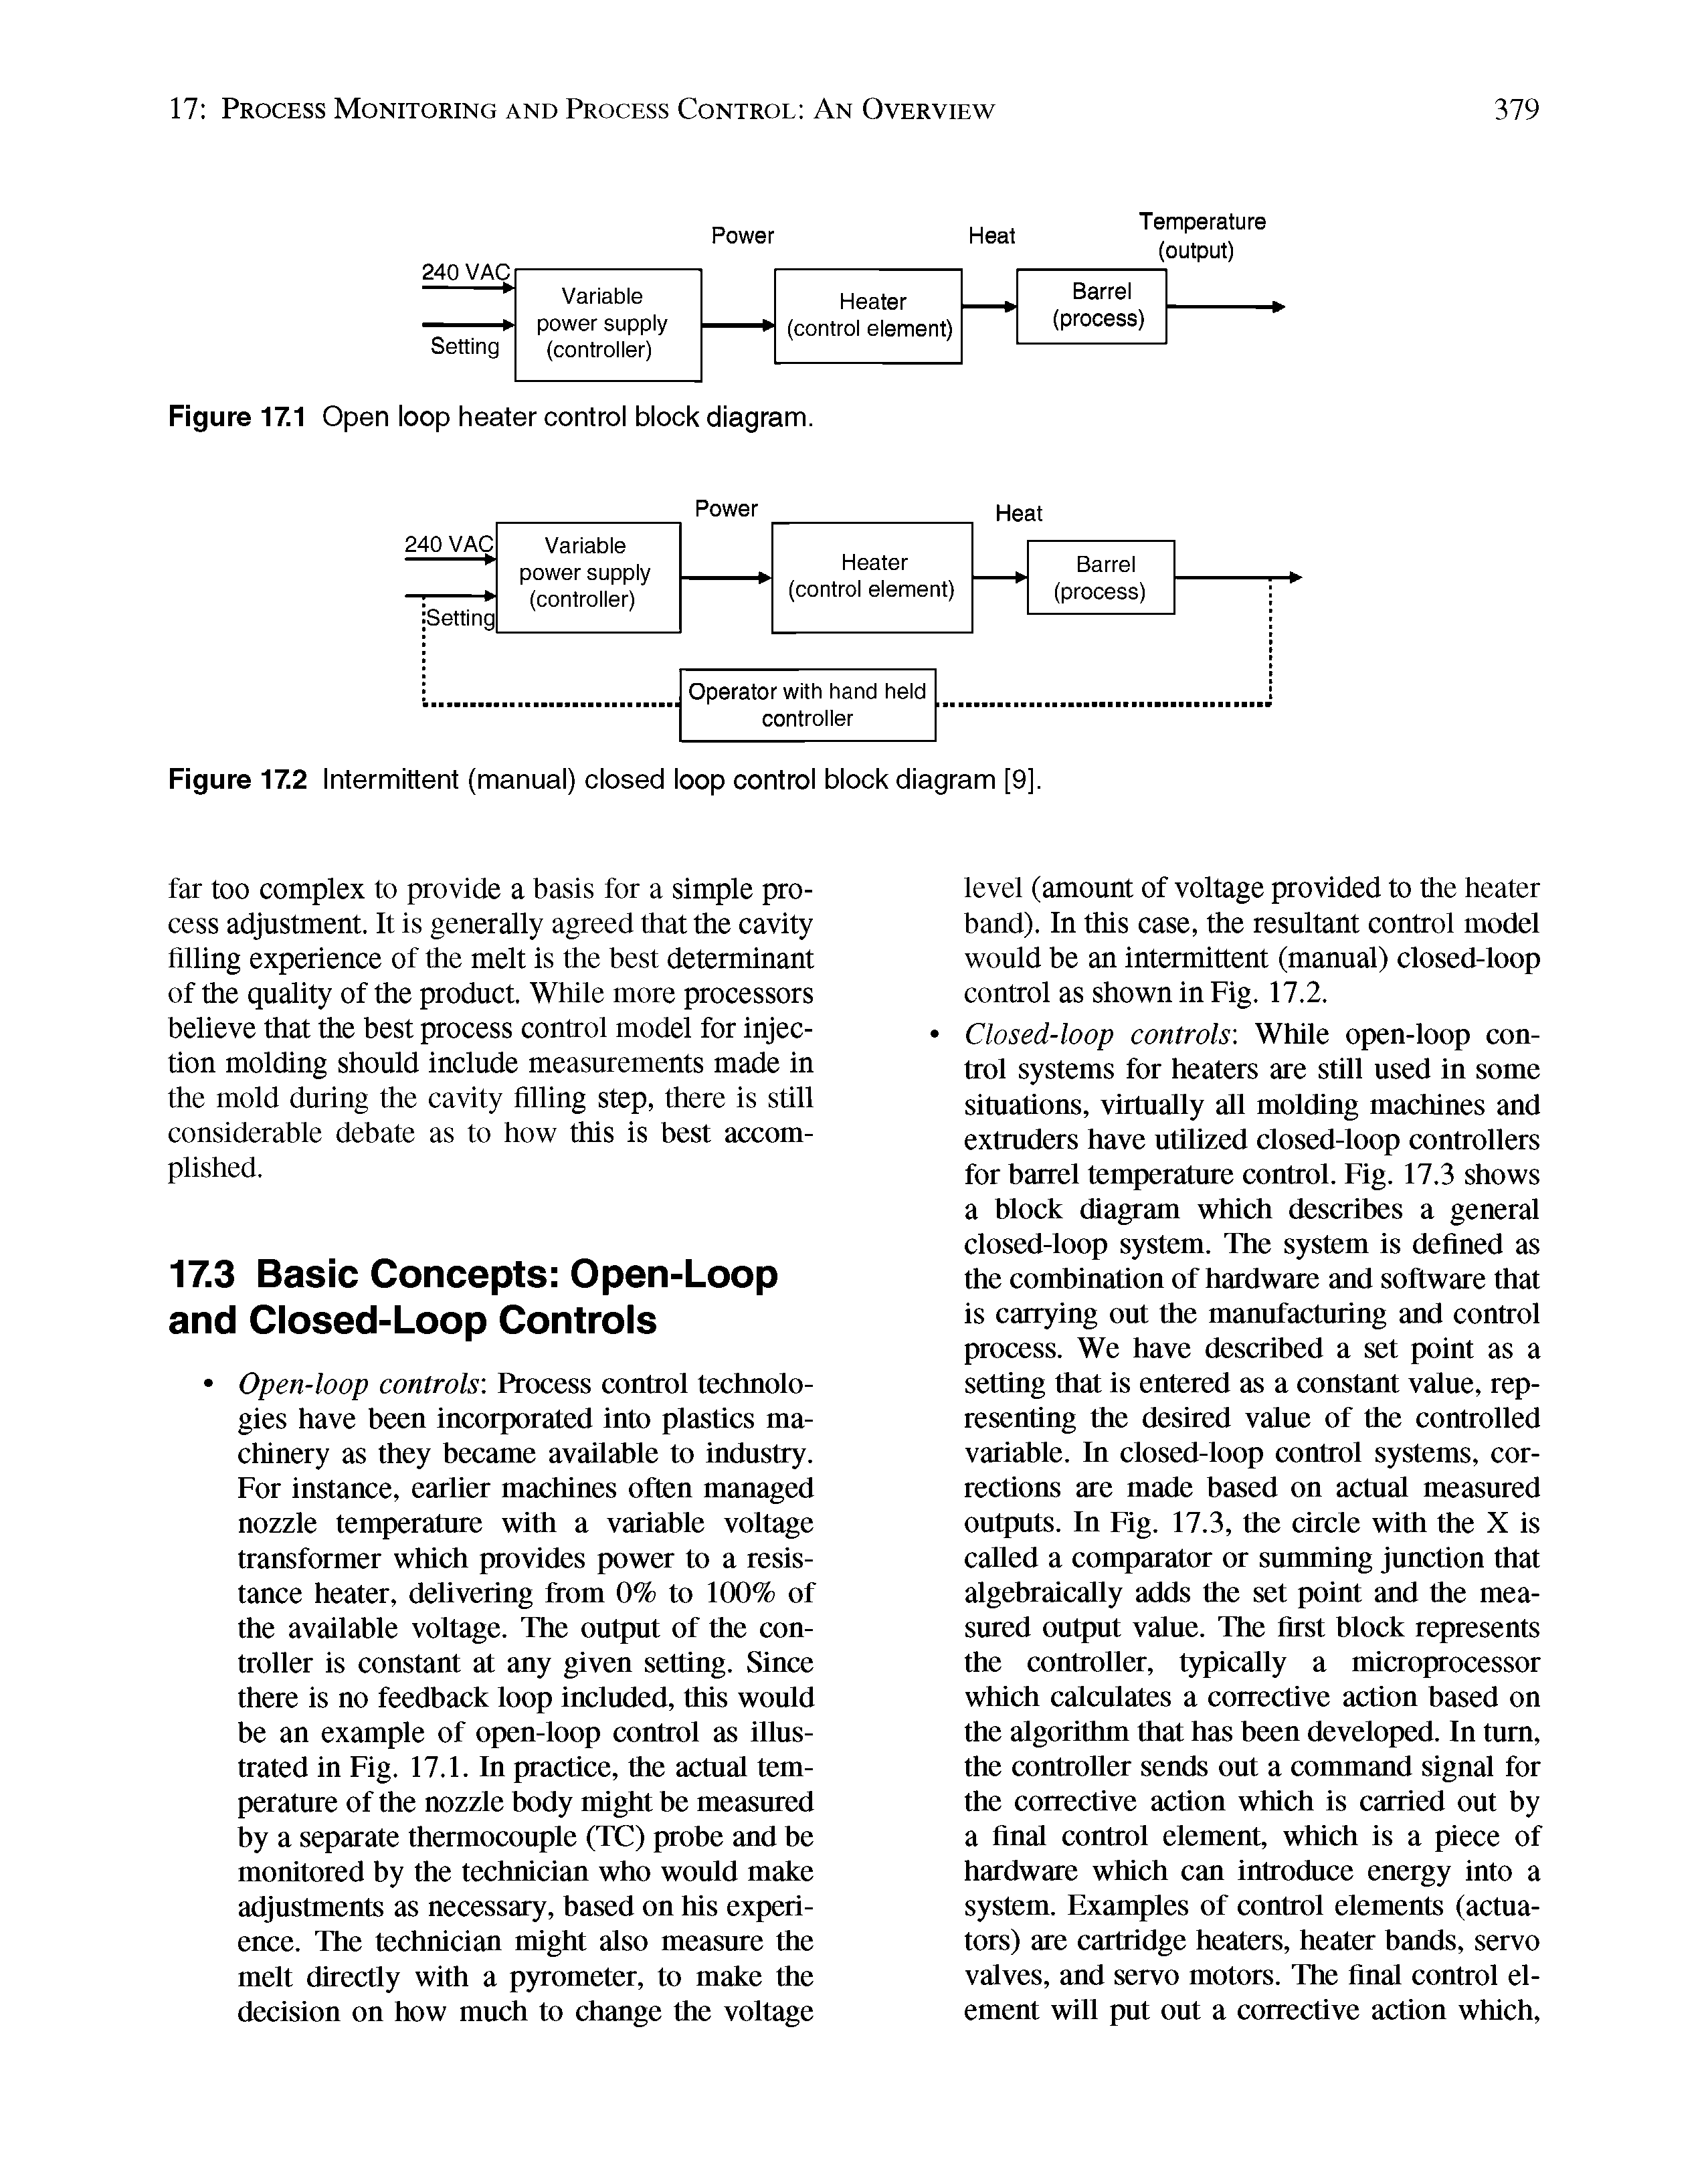 Figure 17.1 Open loop heater control block diagram.